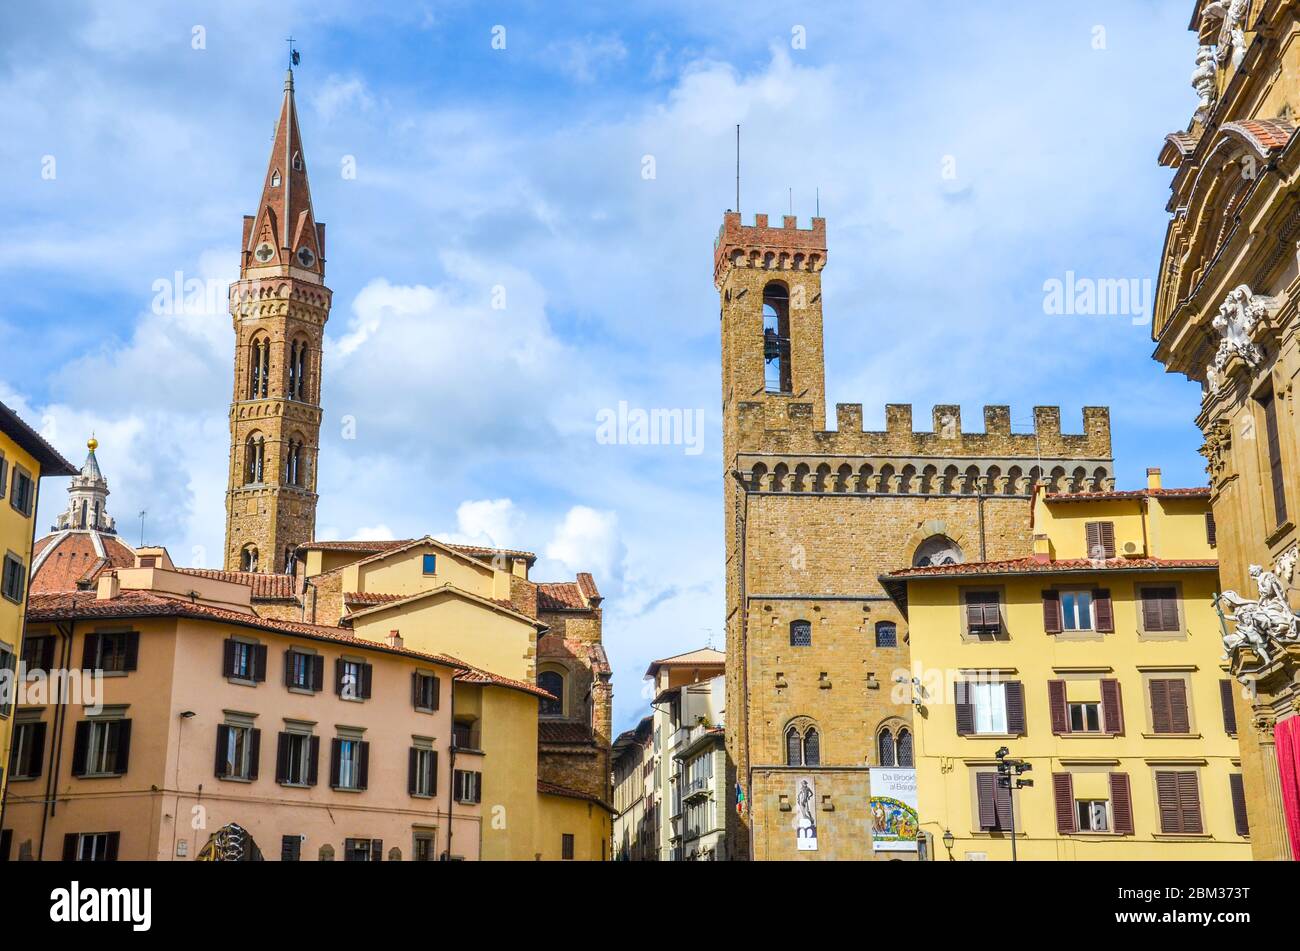 Firenze, Toscana, Italia - 31 marzo 2018: La torre della Badia Fiorentina e il Museo Nazionale del Bargello nel centro storico della bellissima città italiana. Foto orizzontale. Foto Stock